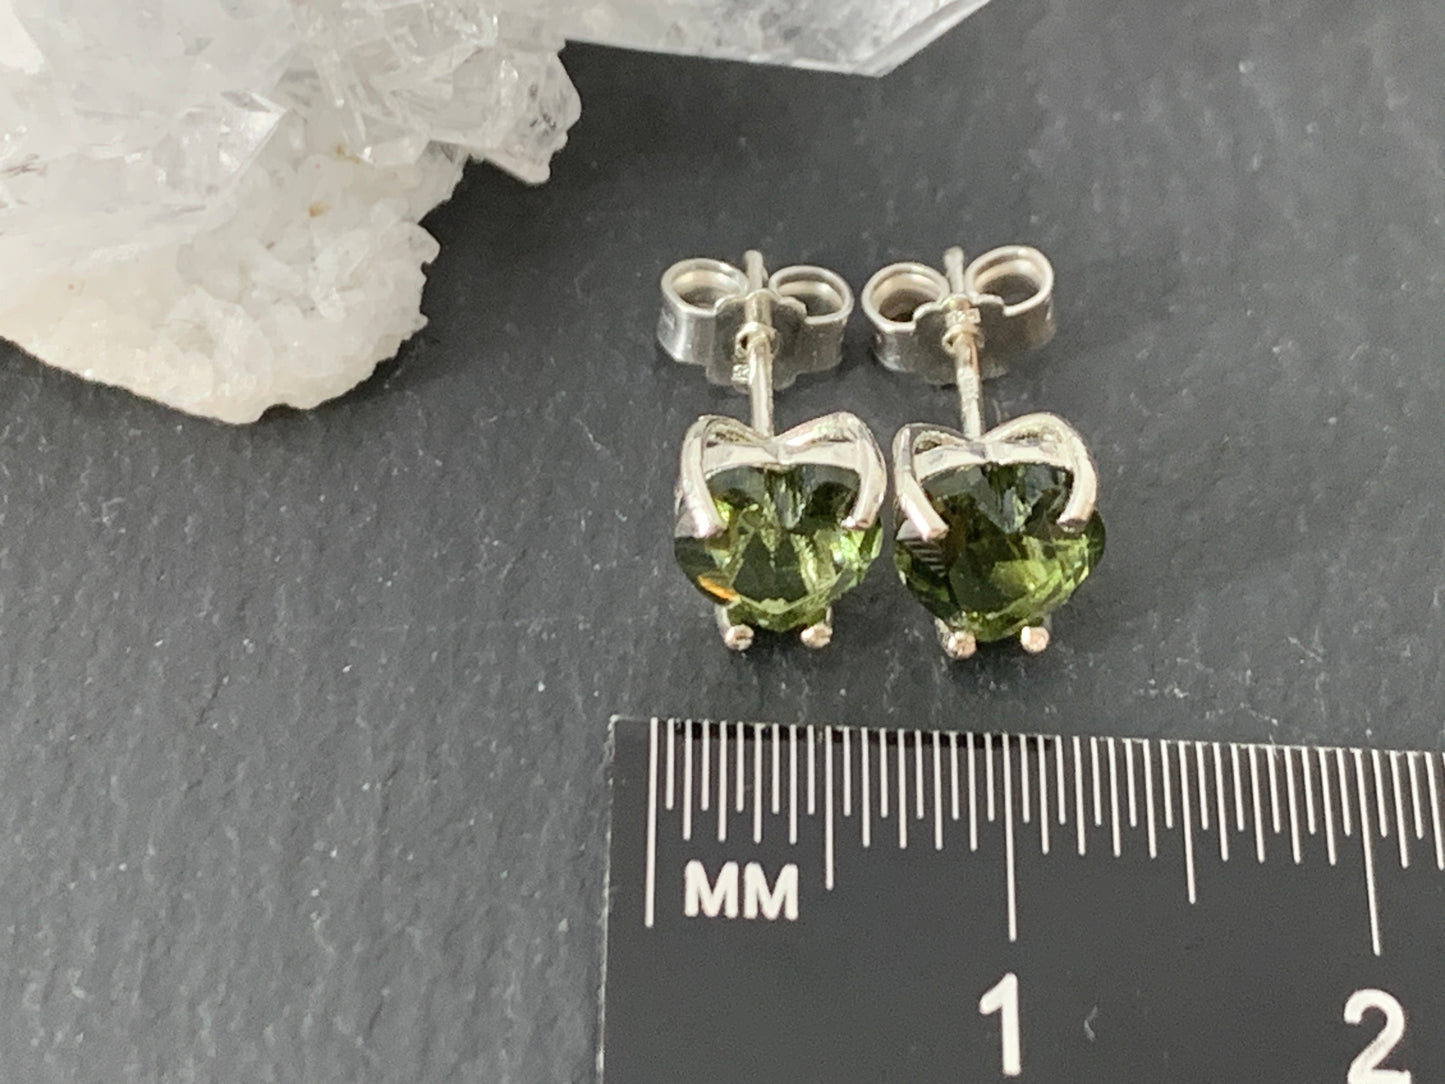 Moldavite Heart Earrings